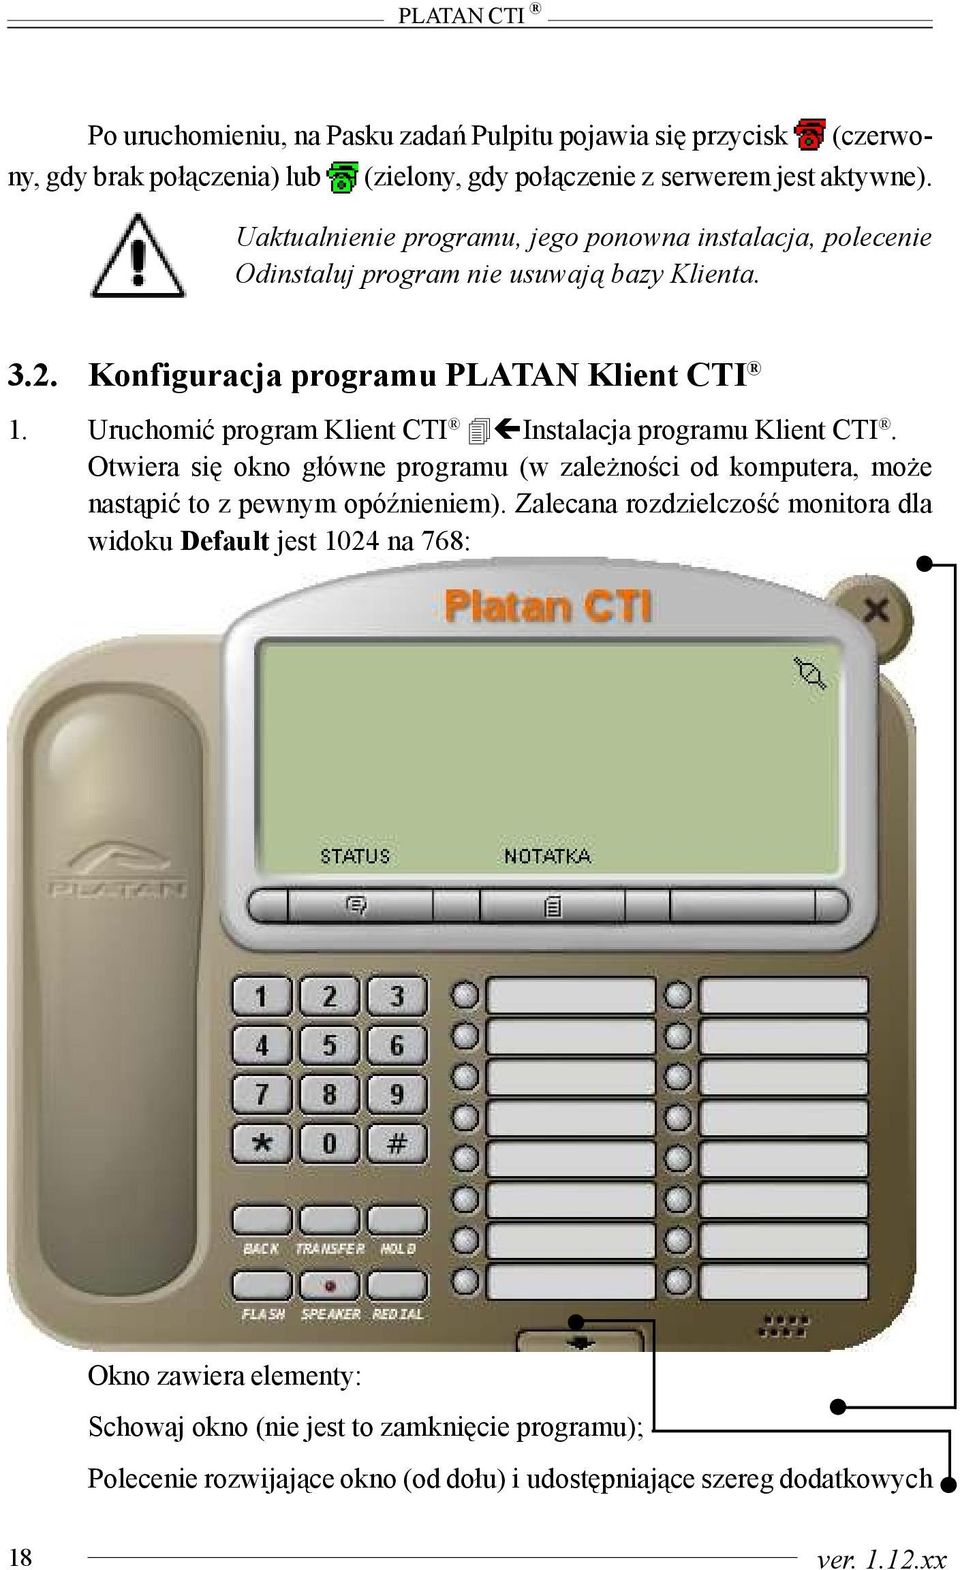 Uruchomiæ program Klient CTI Instalacja programu Klient CTI. Otwiera siê okno g³ówne programu (w zale noœci od komputera, mo e nast¹piæ to z pewnym opóÿnieniem).